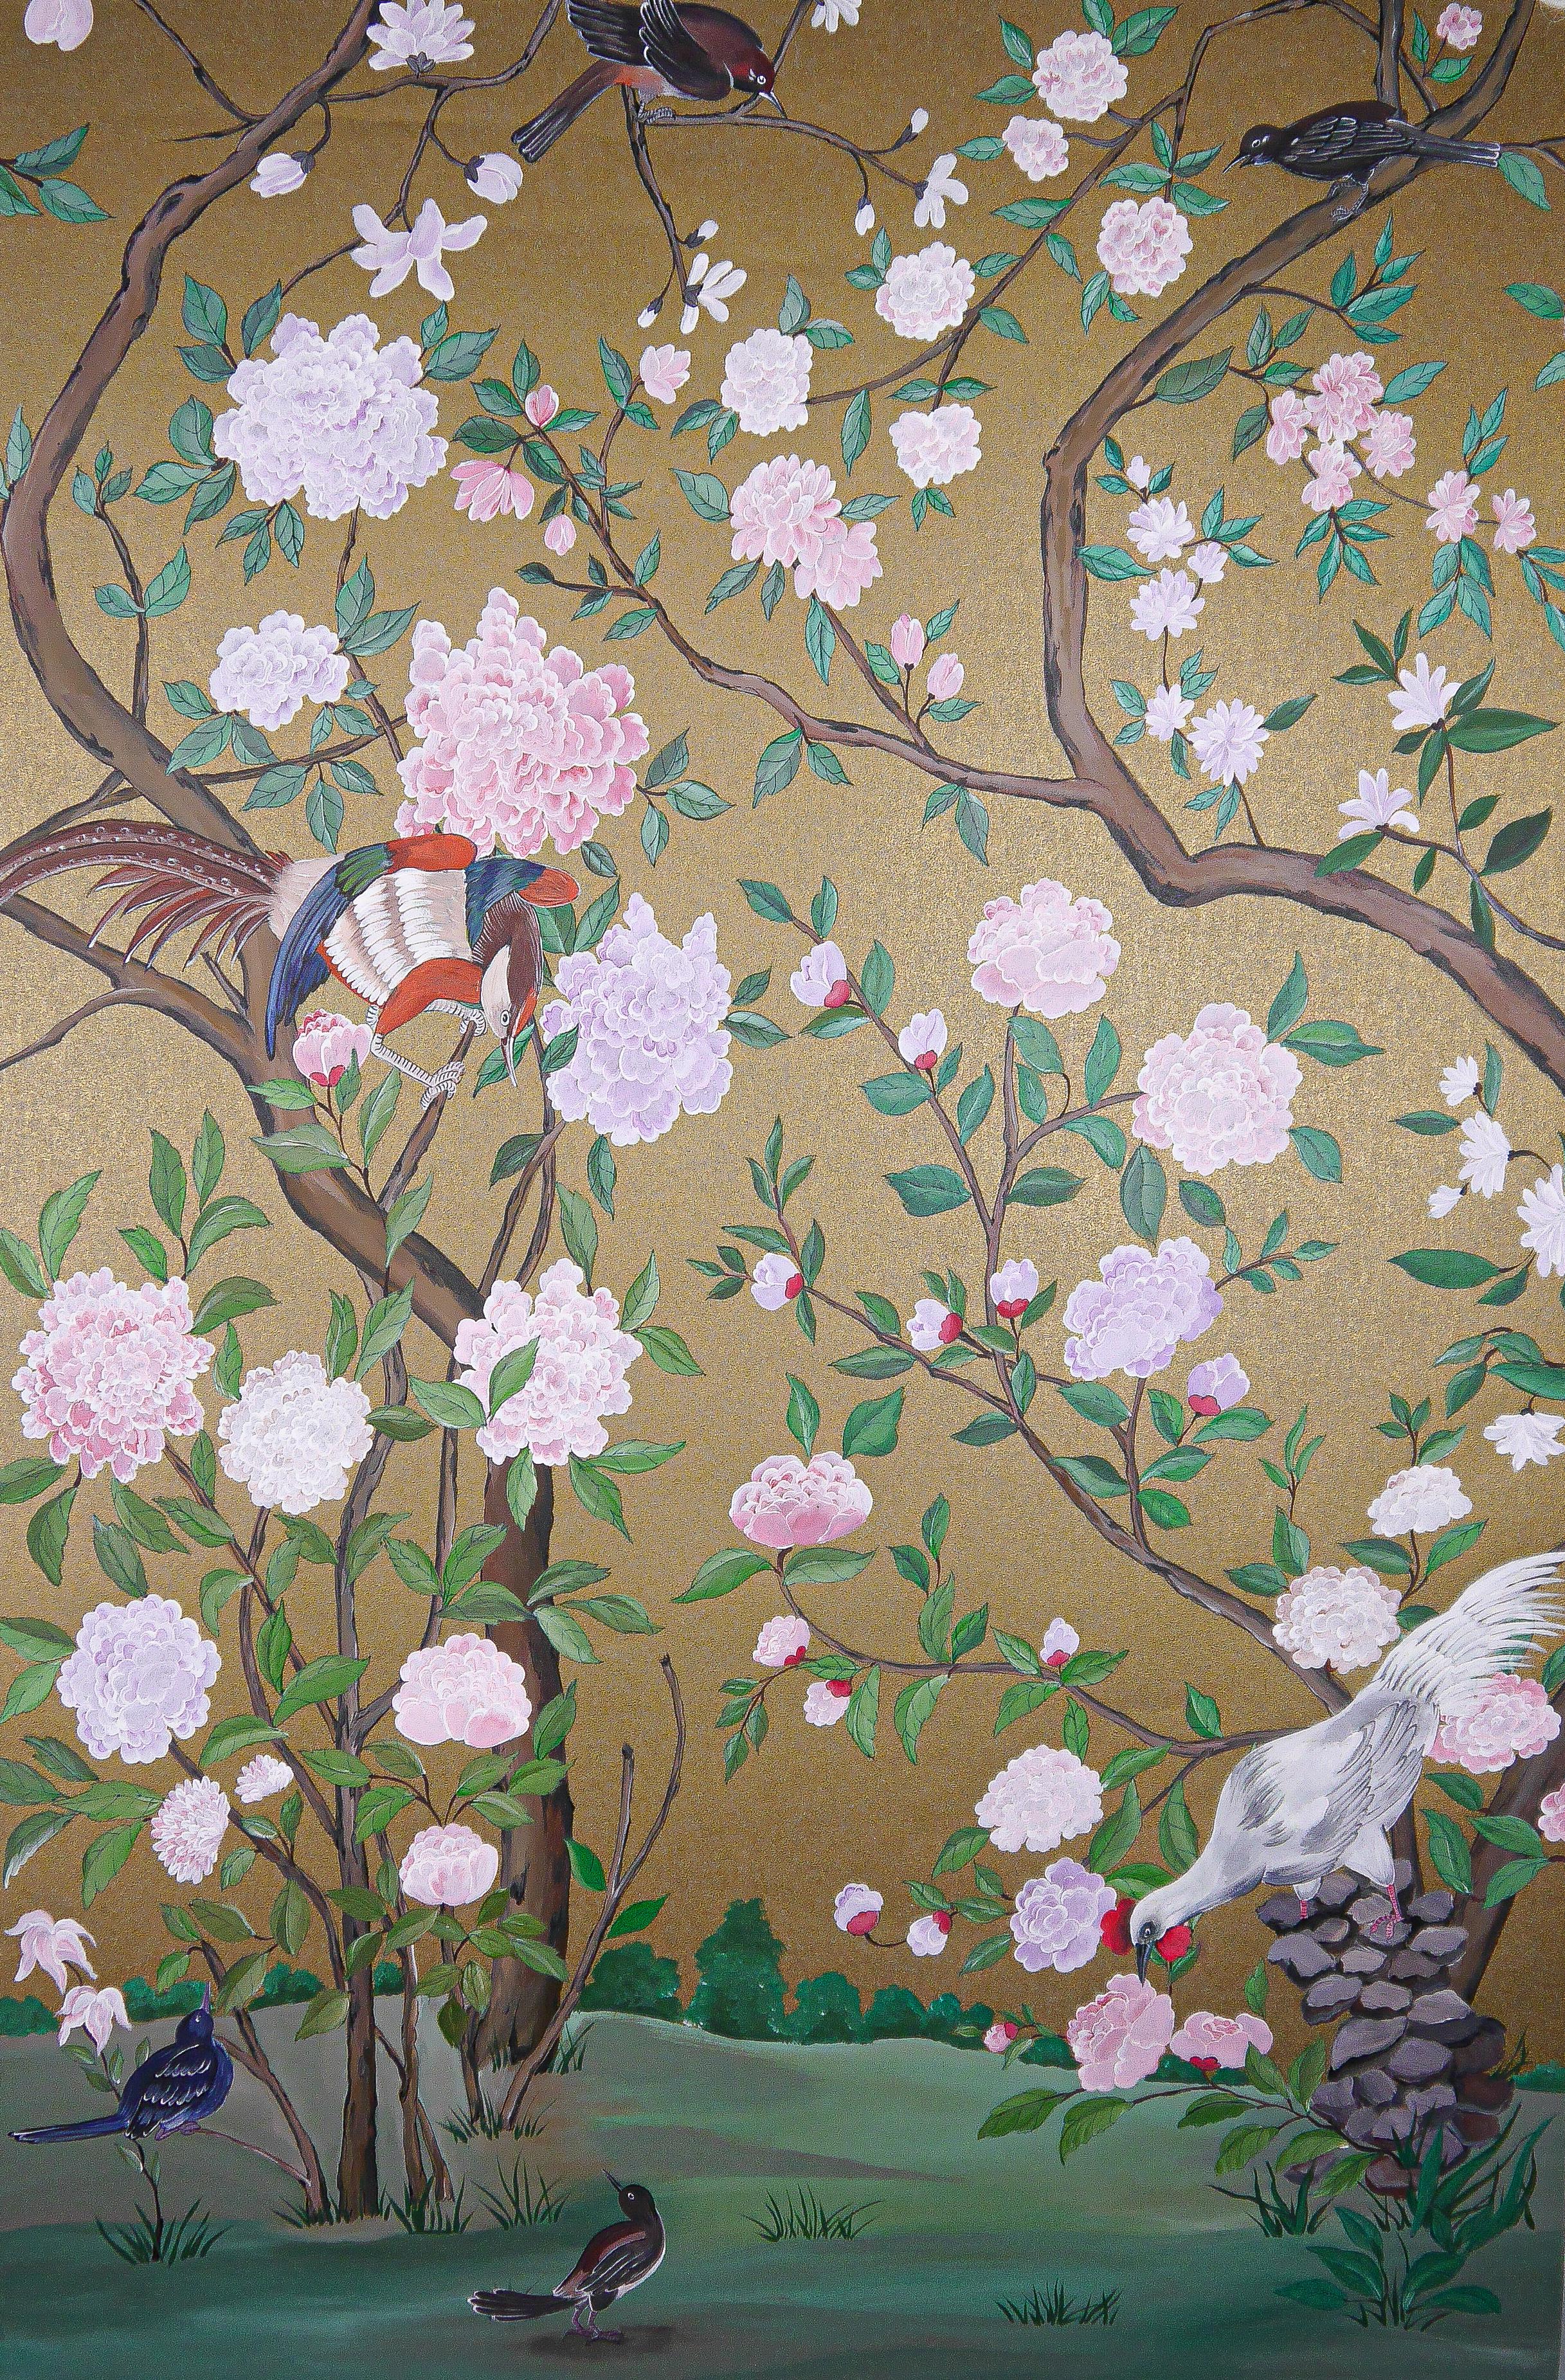 Charleston : reproduction d'un papier peint chinois du XVIIIe siècle sur fond or foncé, décoré d'oiseaux exotiques. Un ensemble de 2 panneaux.

Nos papiers peints et panneaux sont produits avec amour et patience, les artistes investissant des